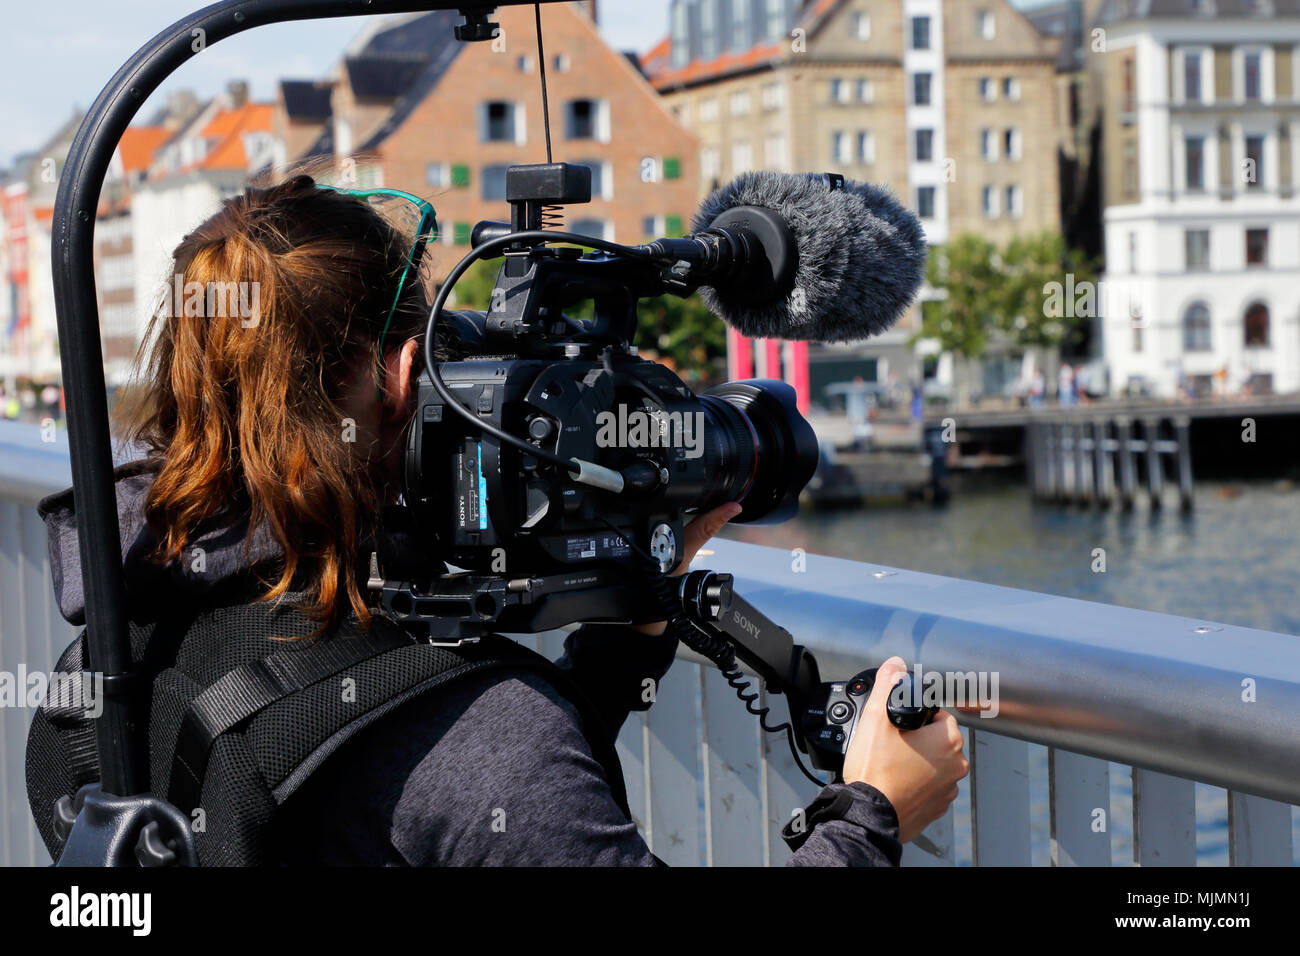 Kopenhagen, Dänemark - 24 August, 2017: Eine weibliche Kameramann verwendet eine stabilisierte professionelle Videokamera in Nyhavn. Stockfoto